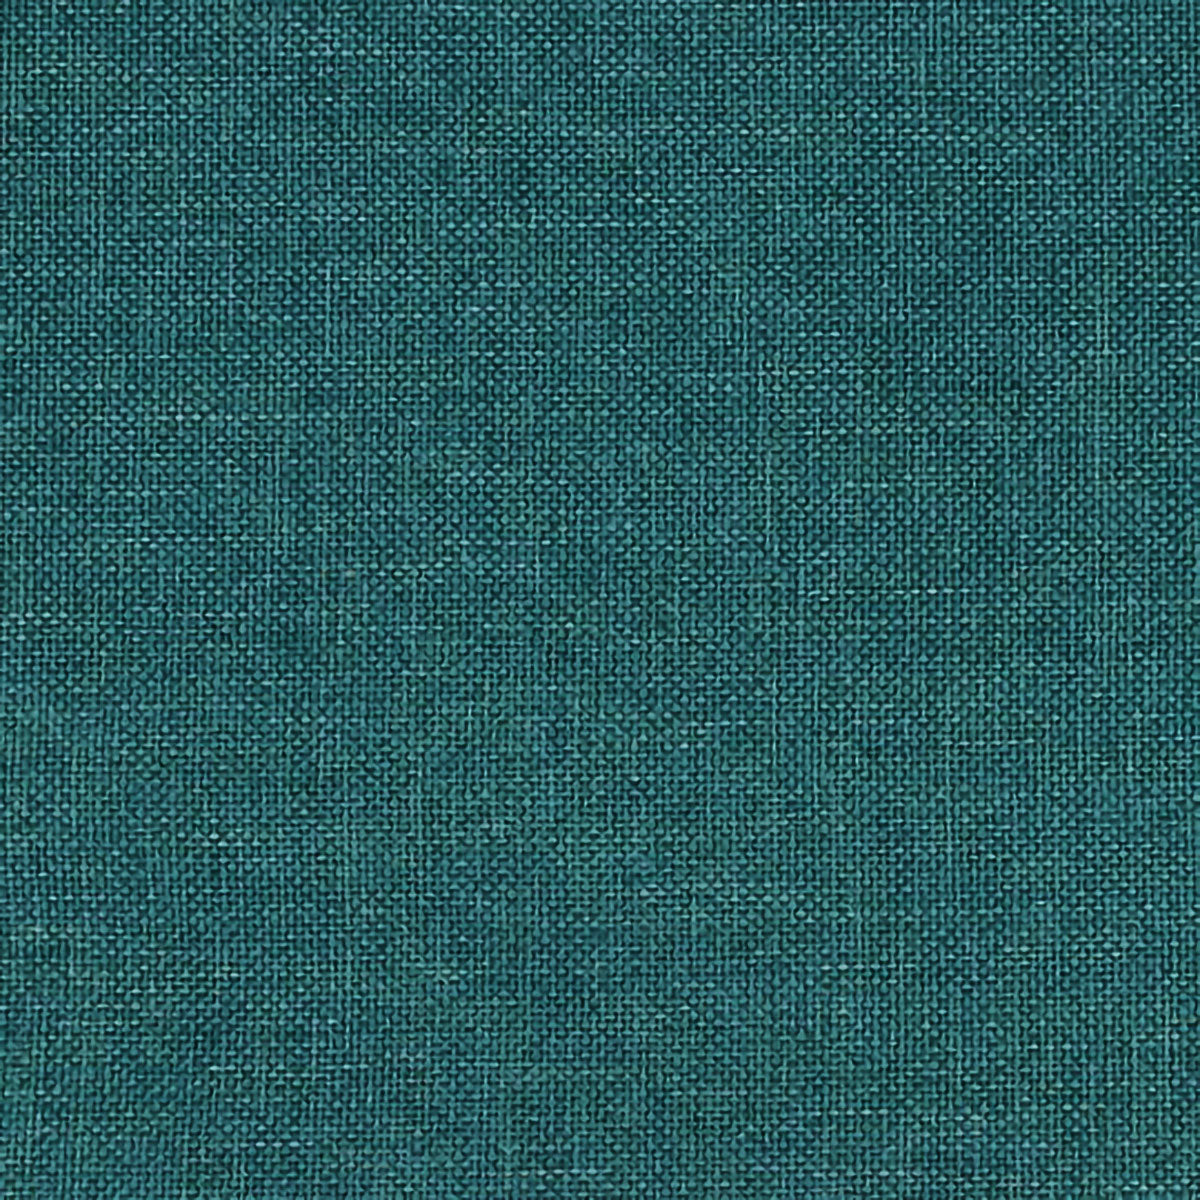 https://barnetthomedecor.com/cdn/shop/files/hayden-turquoise-fabric-detail_83ed5afd-ee86-4055-be1f-acf1babb4cbe.jpg?v=1698565979&width=1445